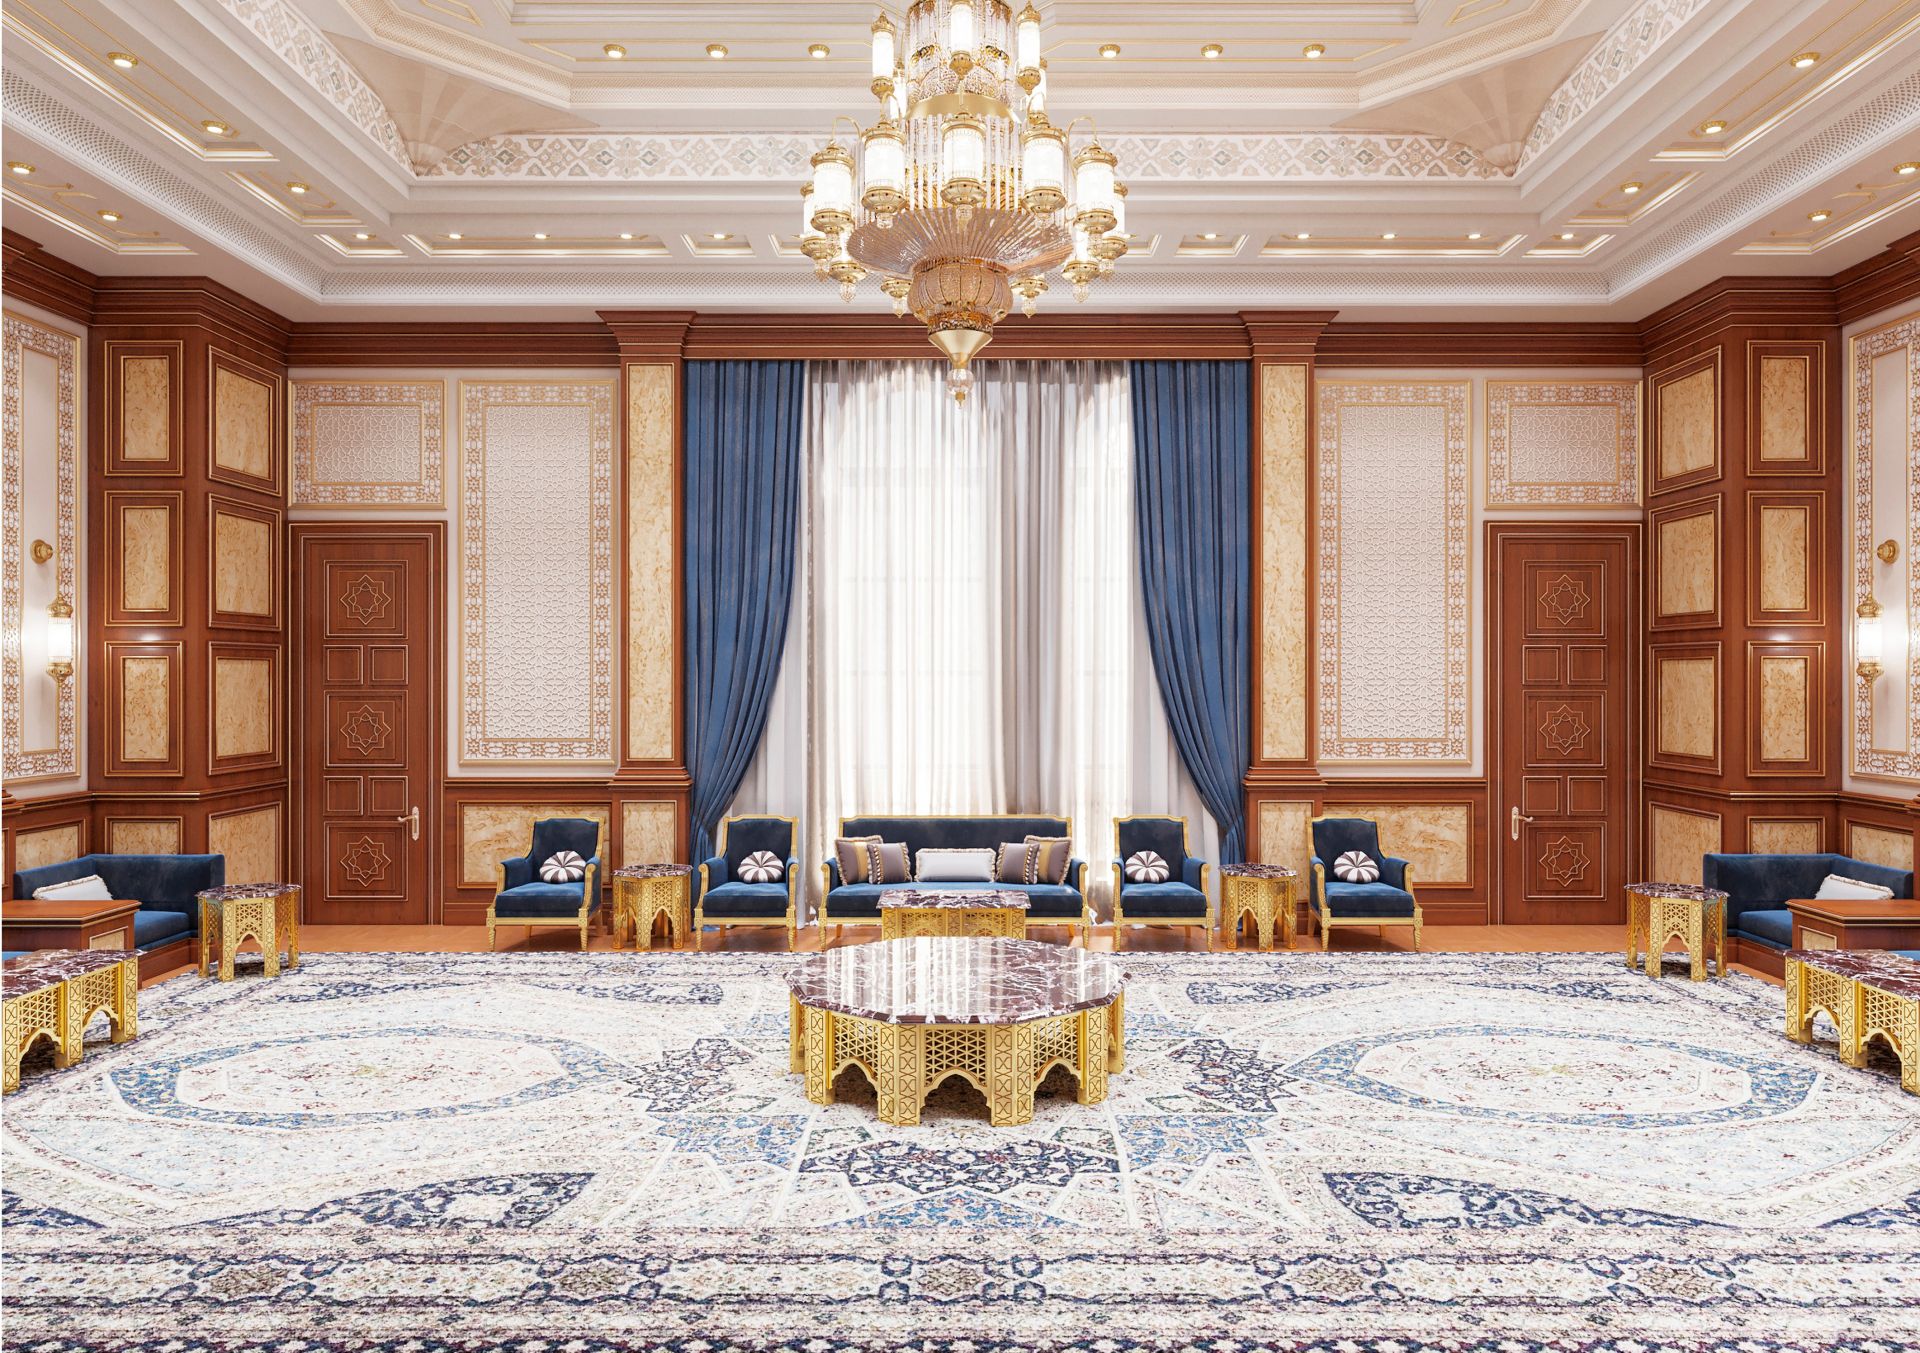 Design, Leisure room interior with oriental motifs